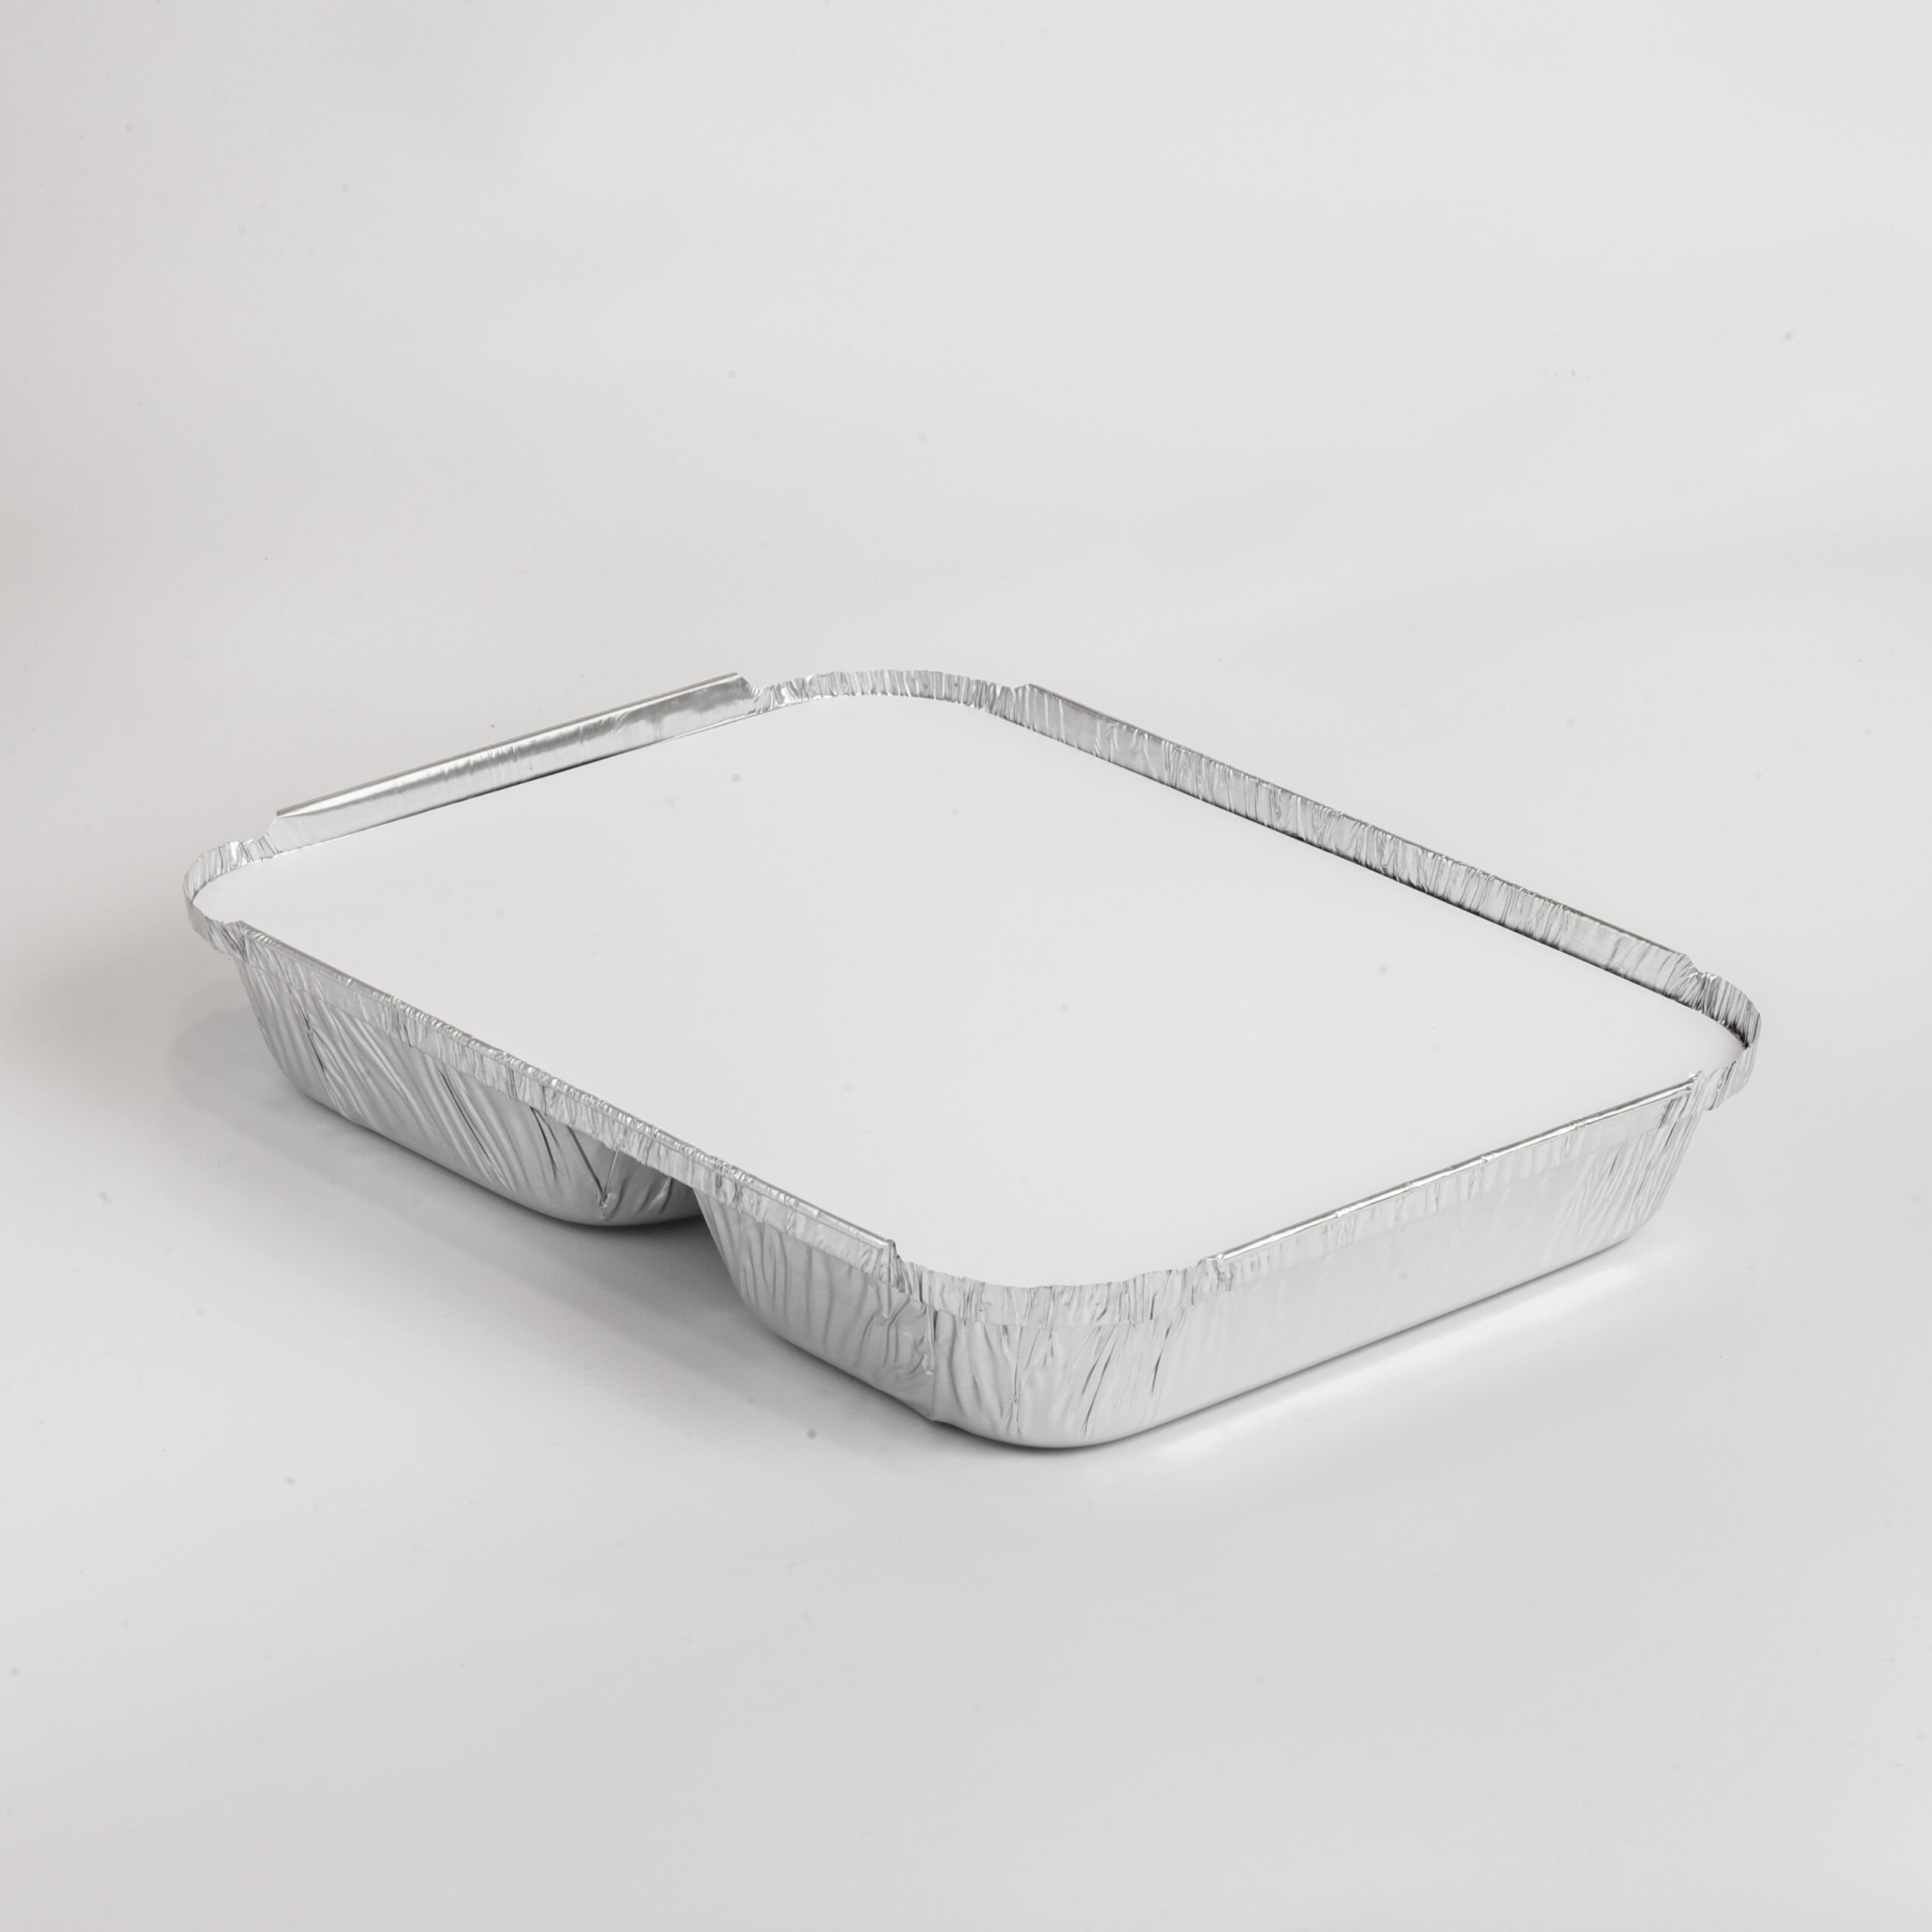 Barquette en aluminium operculable avec couvercle carton vendu séparément